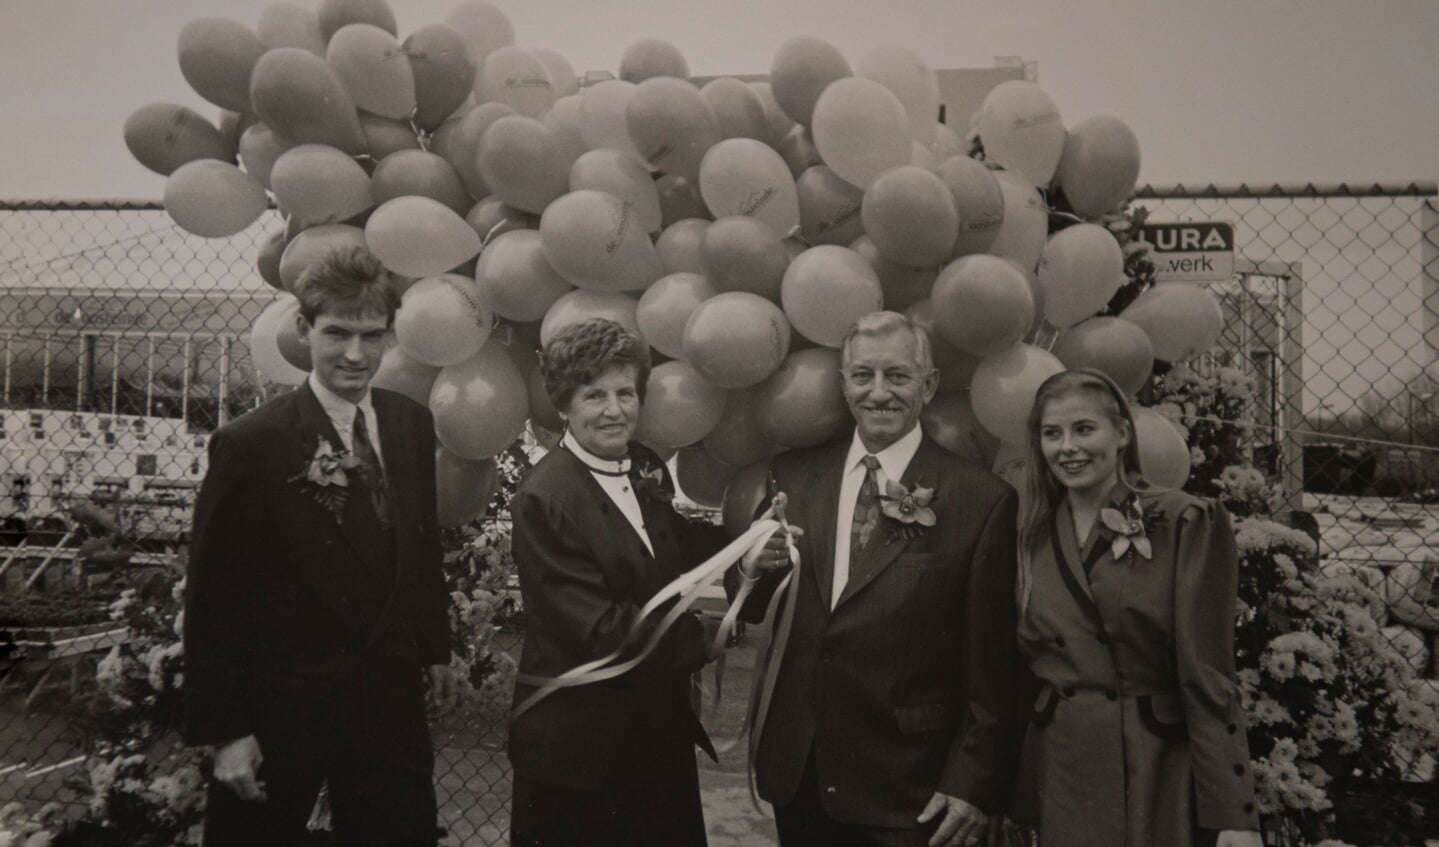 William en Lucienne met Wim en Henny Dobbe tijdens de heropening van de zaak in 1991